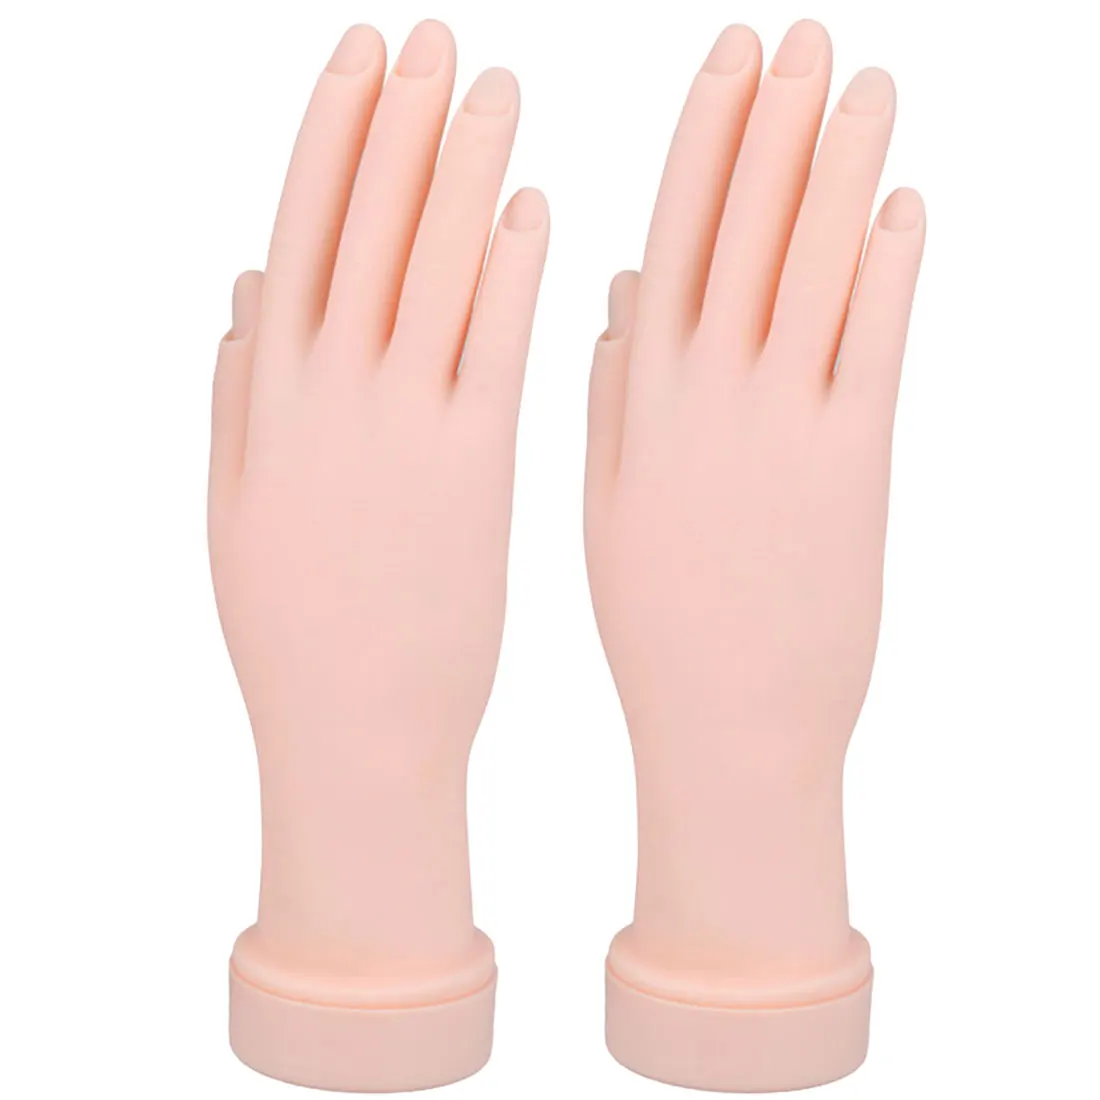 1 шт дизайн ногтей Поддельные руки для обучения/цвет кожи гибкий мягкий пластиковый флекционный Манекен Модель руки/живопись практический инструмент